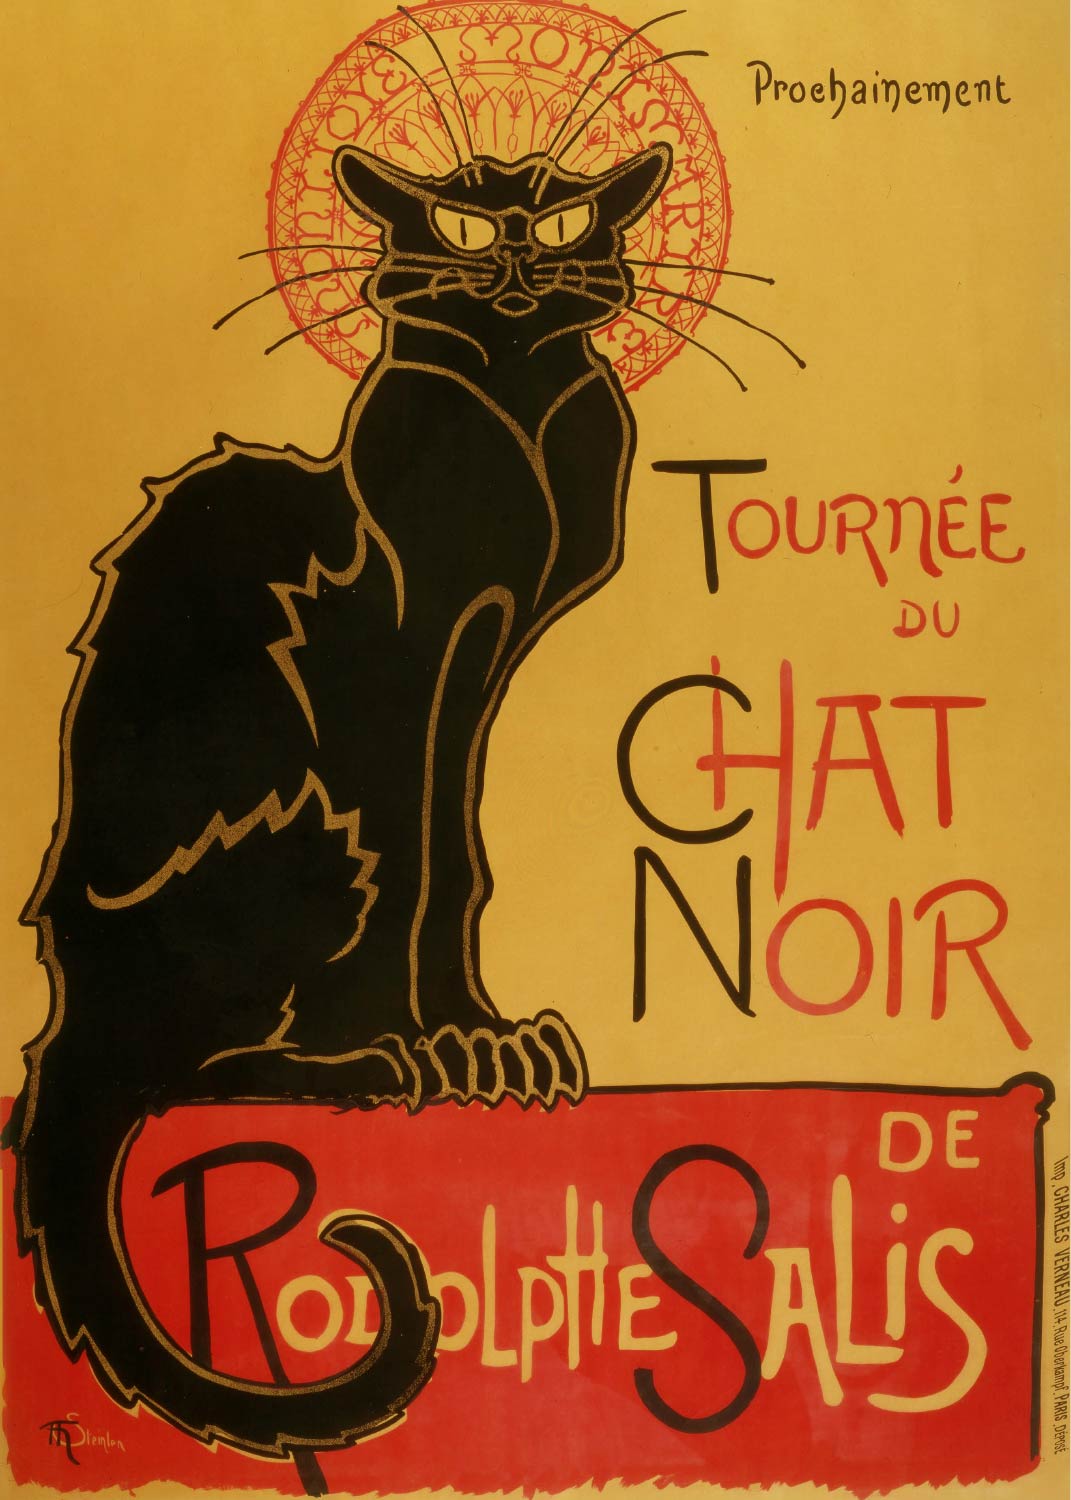 【無料壁紙】アレクサンドル・スタンラン「ルドルフ・サリスの黒猫の巡業 (1896)」 / Alexandre Steinlen_Tournée du Chat Noir de Rodolphe Salis (1896)